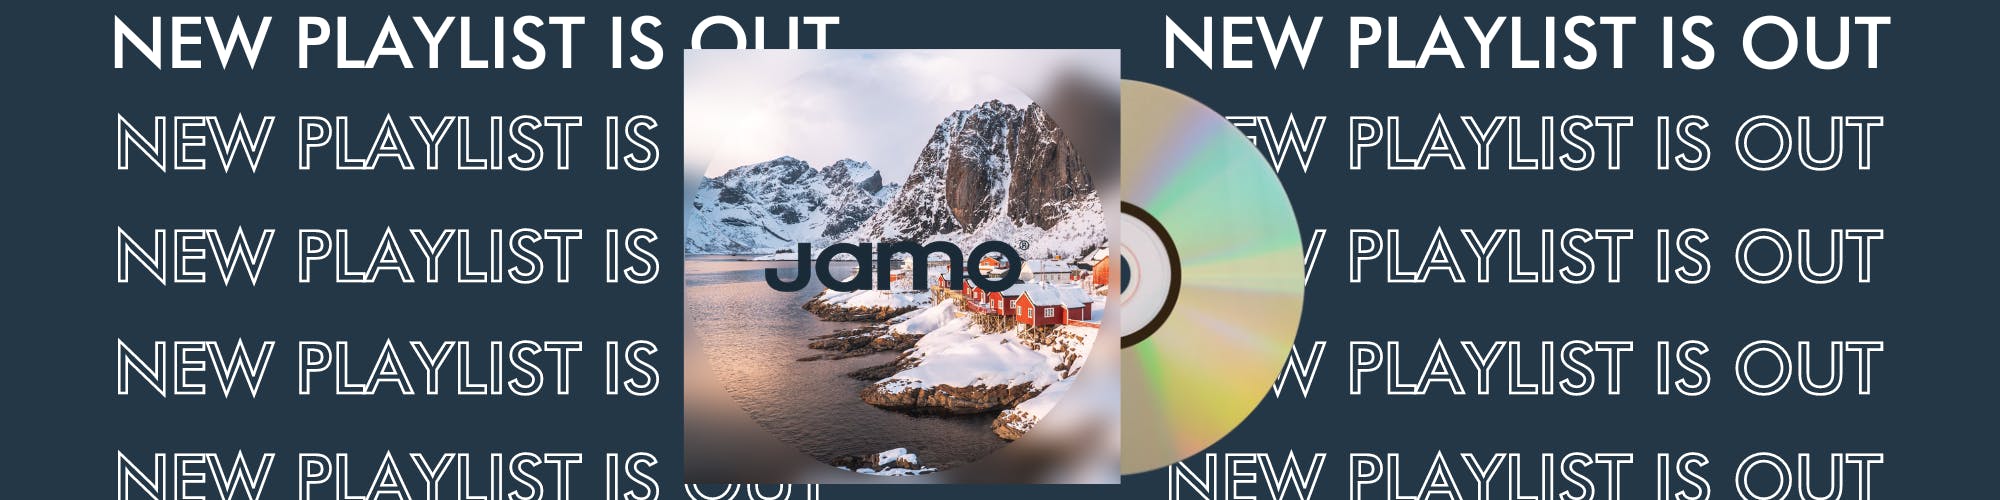 New playlist jamo 2000500 PX